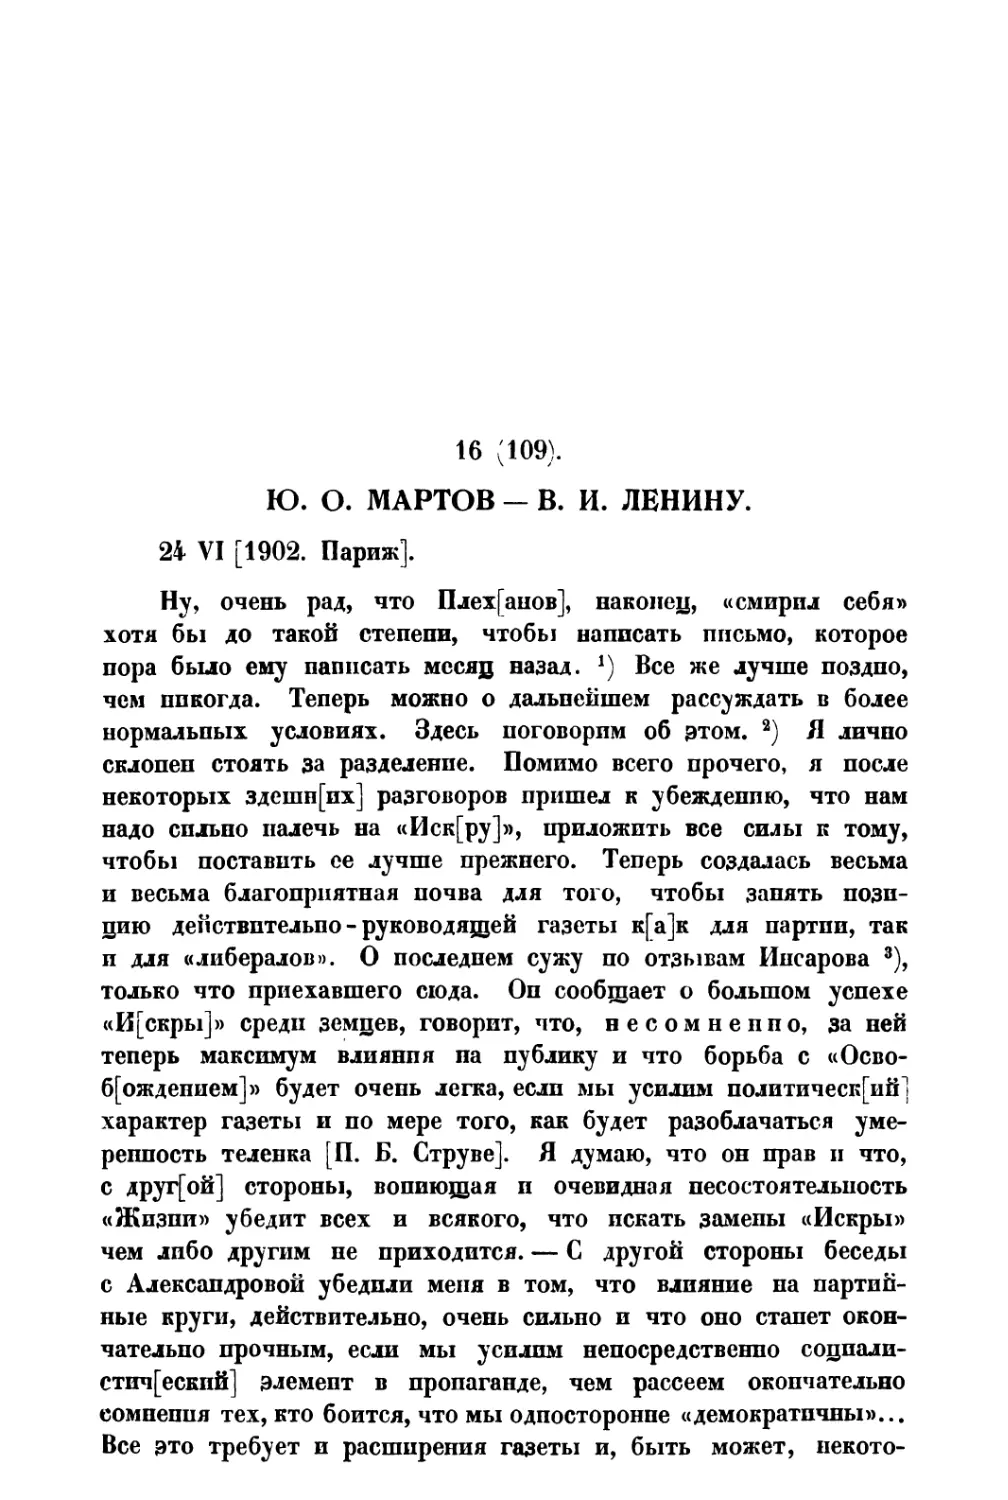 16. Ю. О. Мартов — В. И. Ленину от 24 VI 1902 г